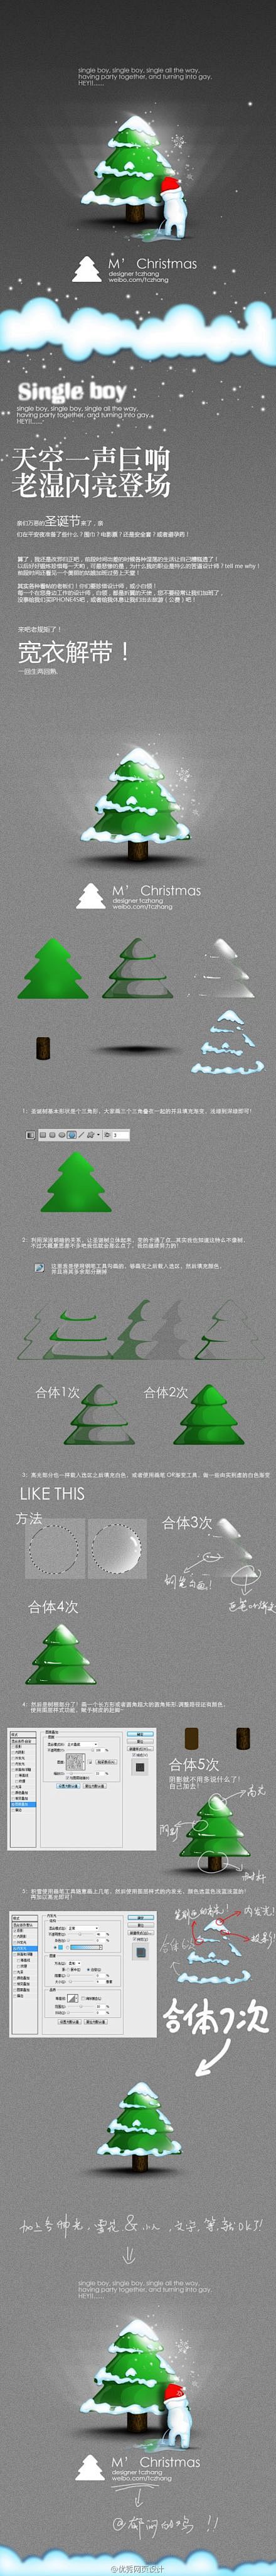 圣诞节→_→